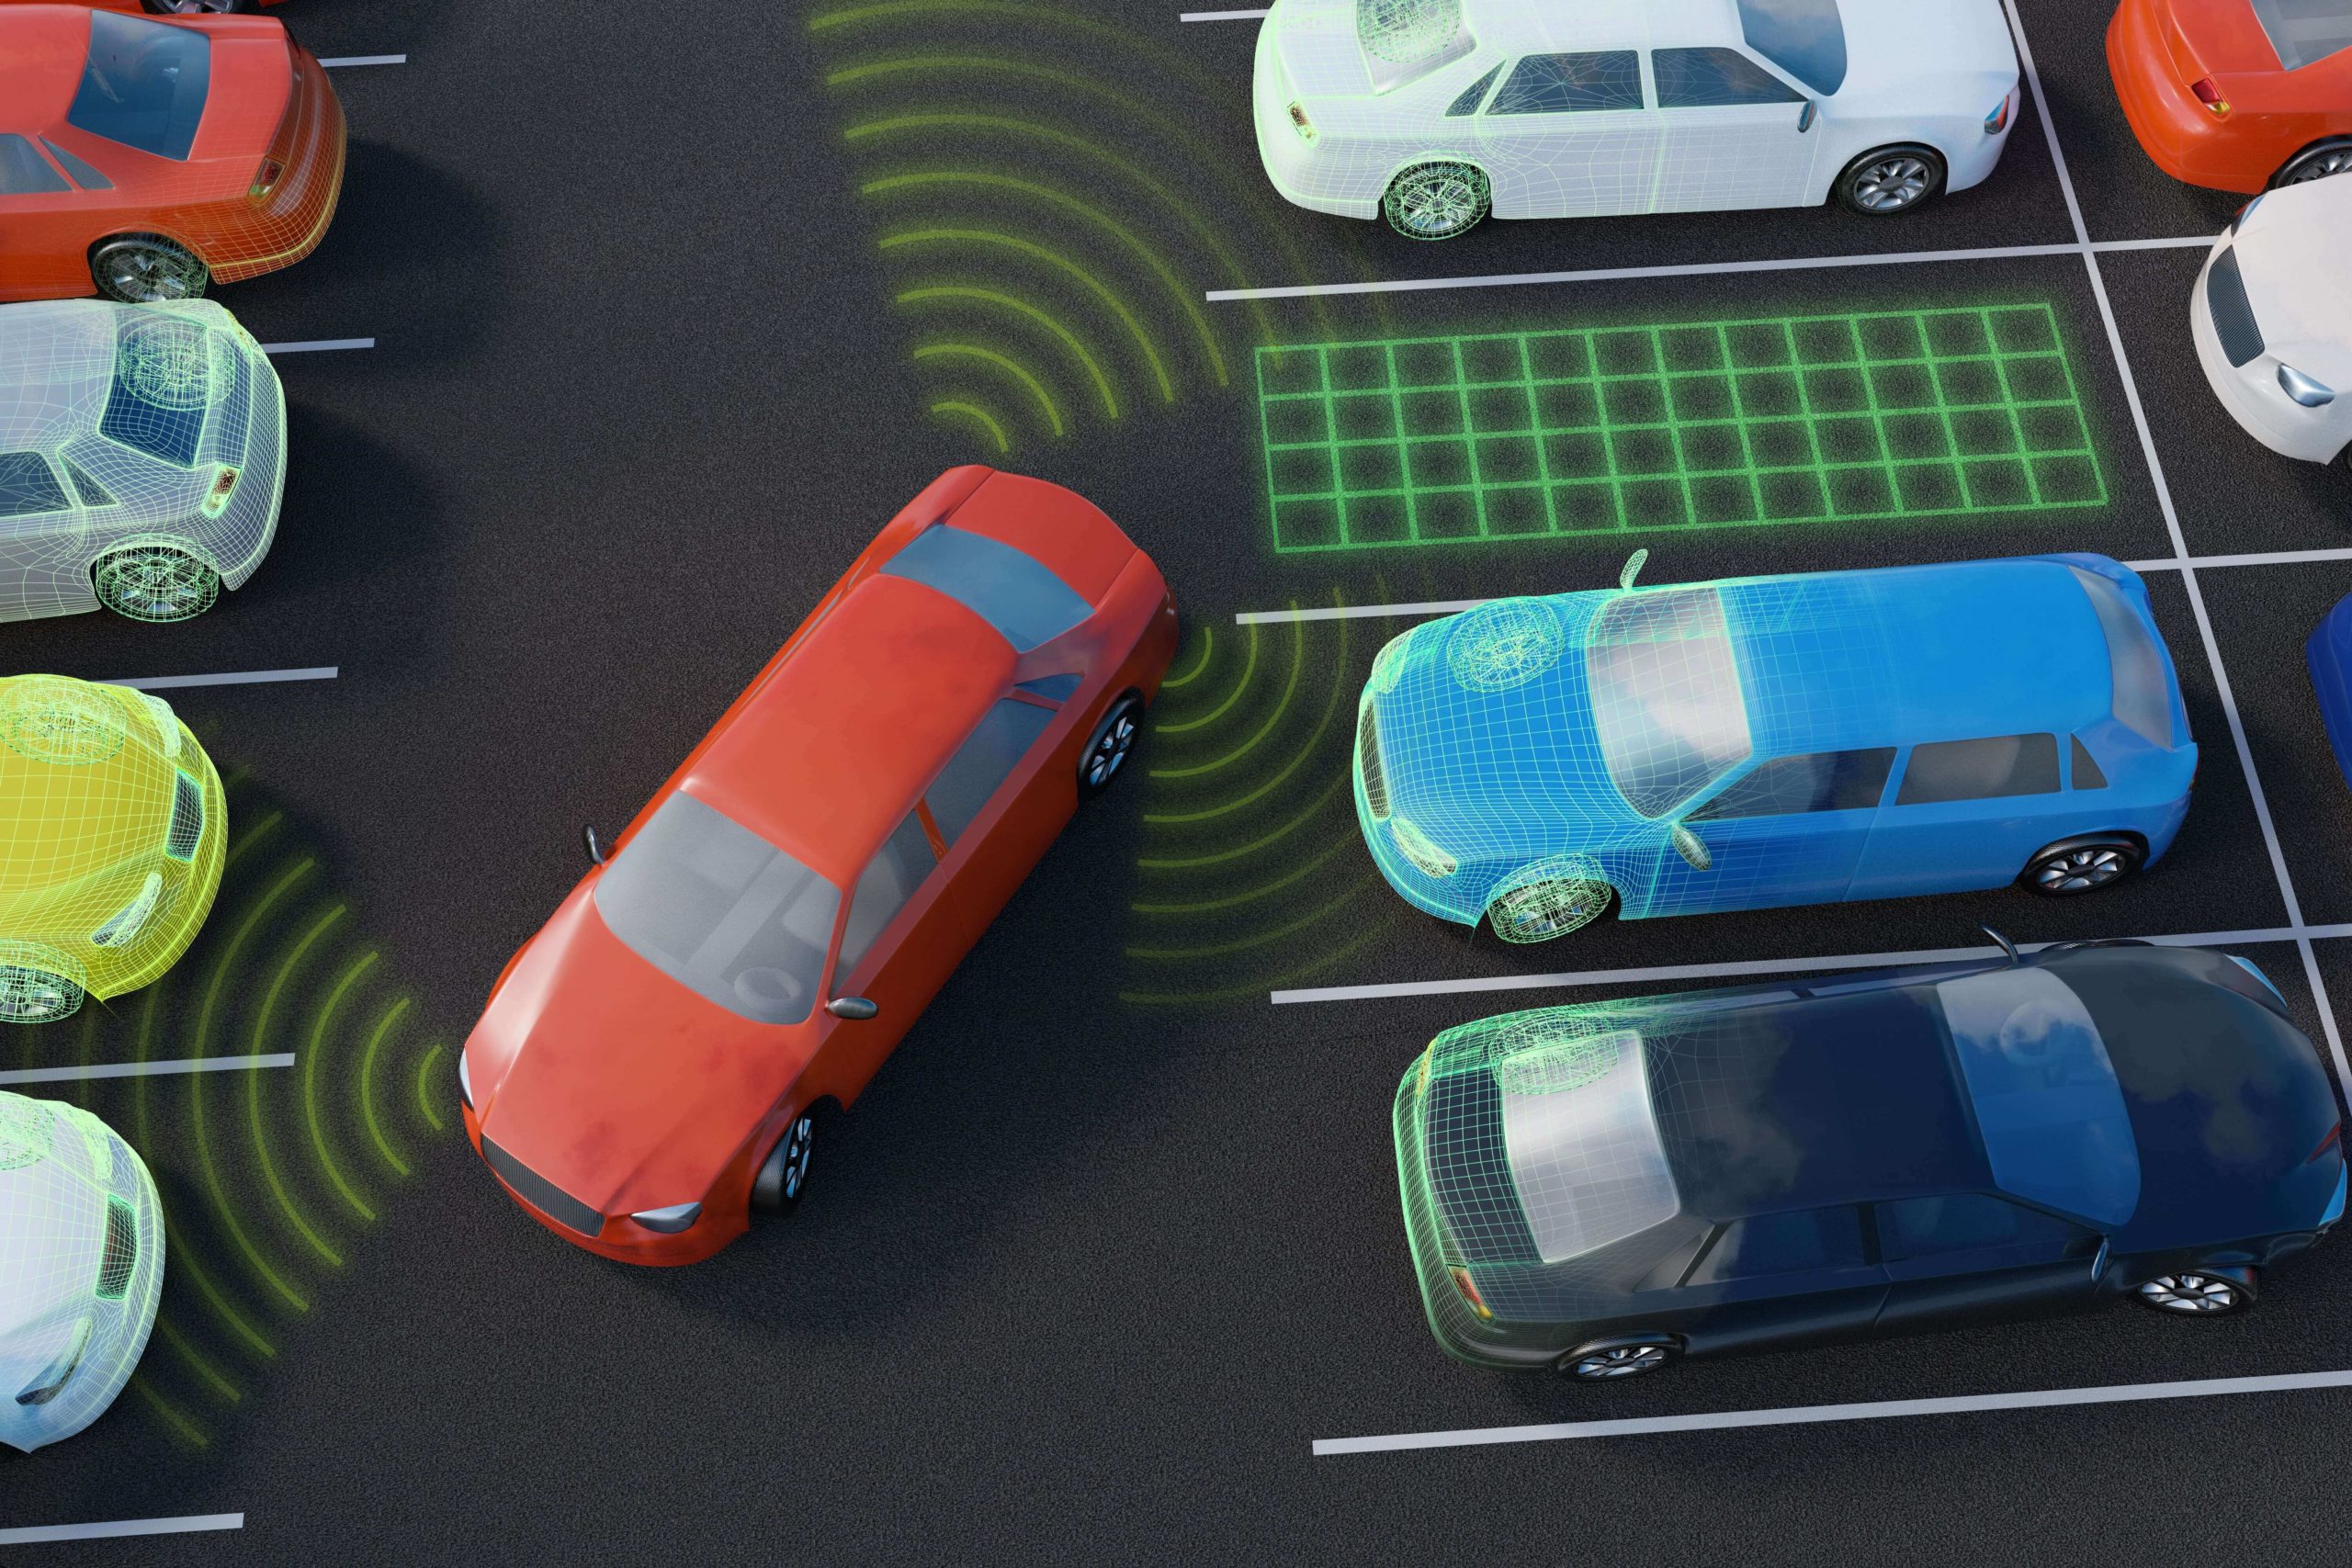 Autonomous vehicle parking infrastructure